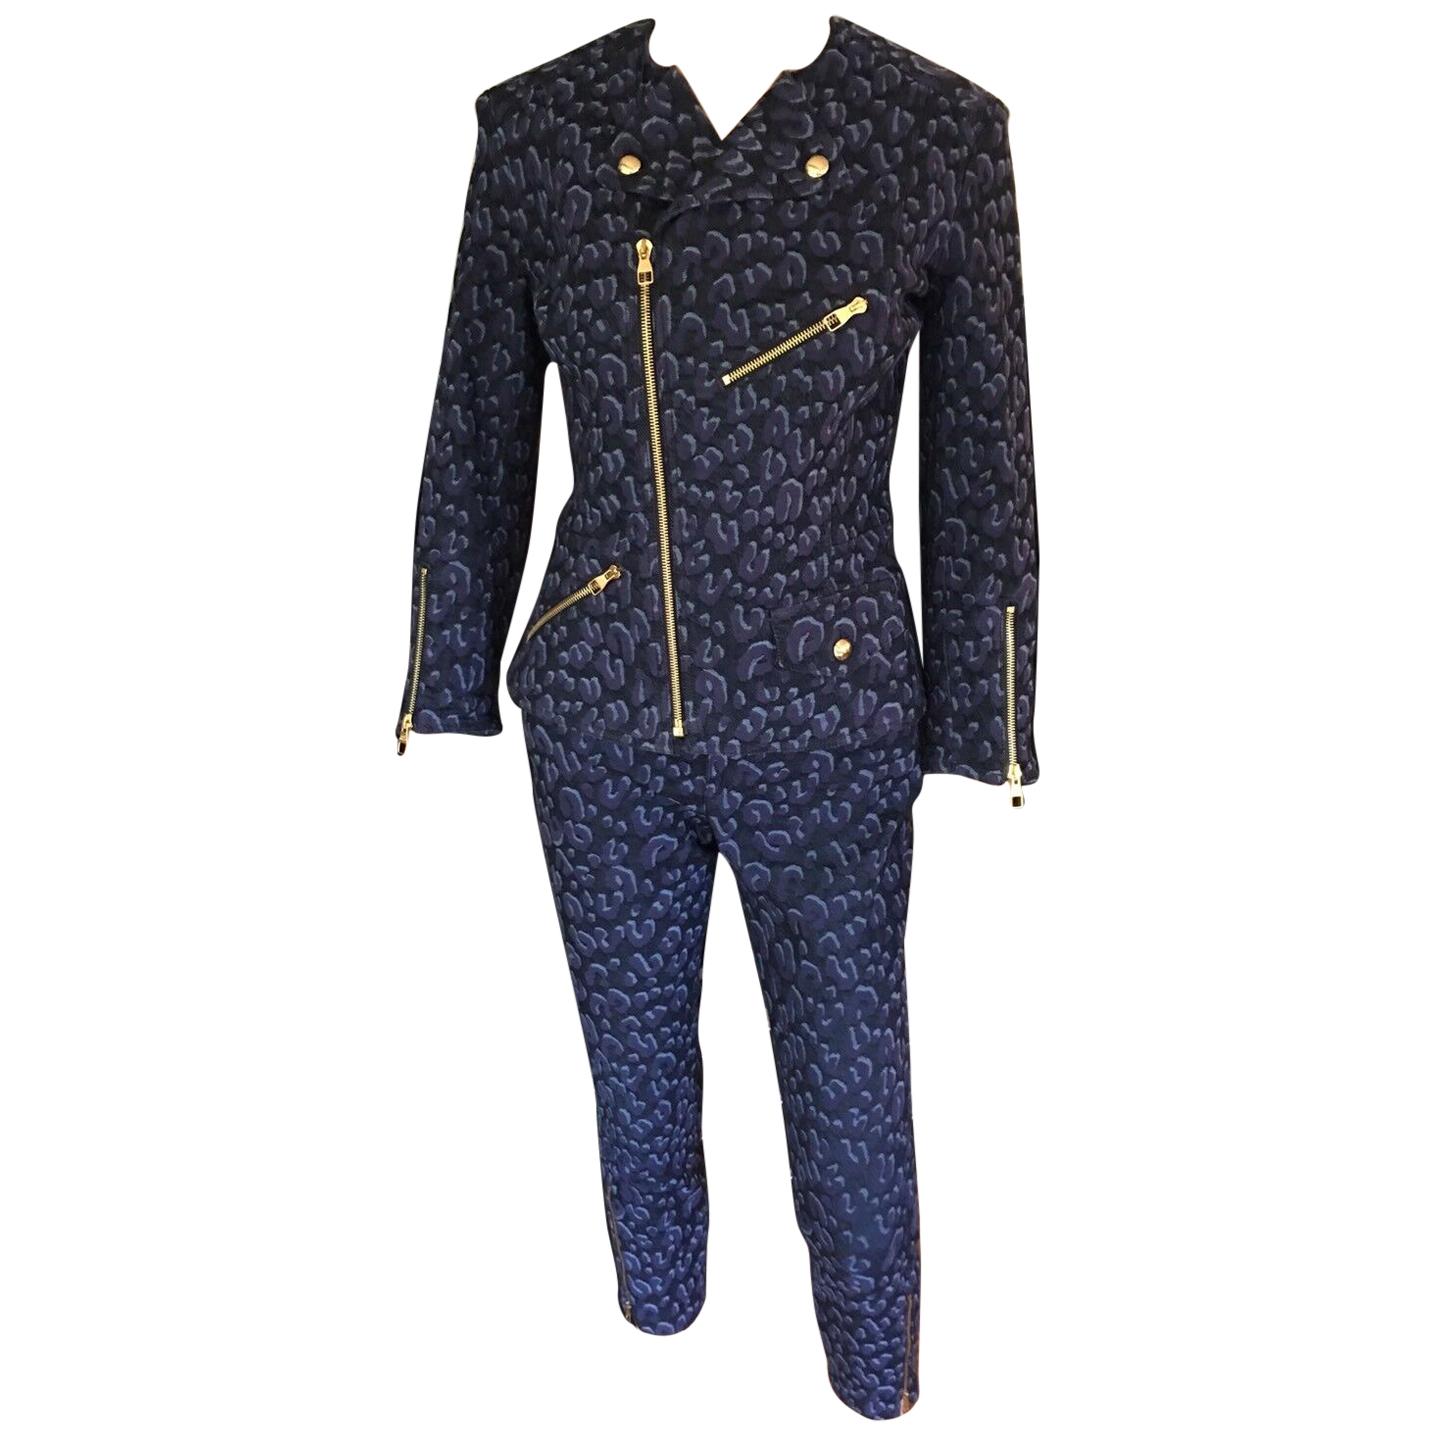 Louis Vuitton Denim Leopard Pattern Pants Jeans & Jacket 2 Piece Set Pantsuit For Sale